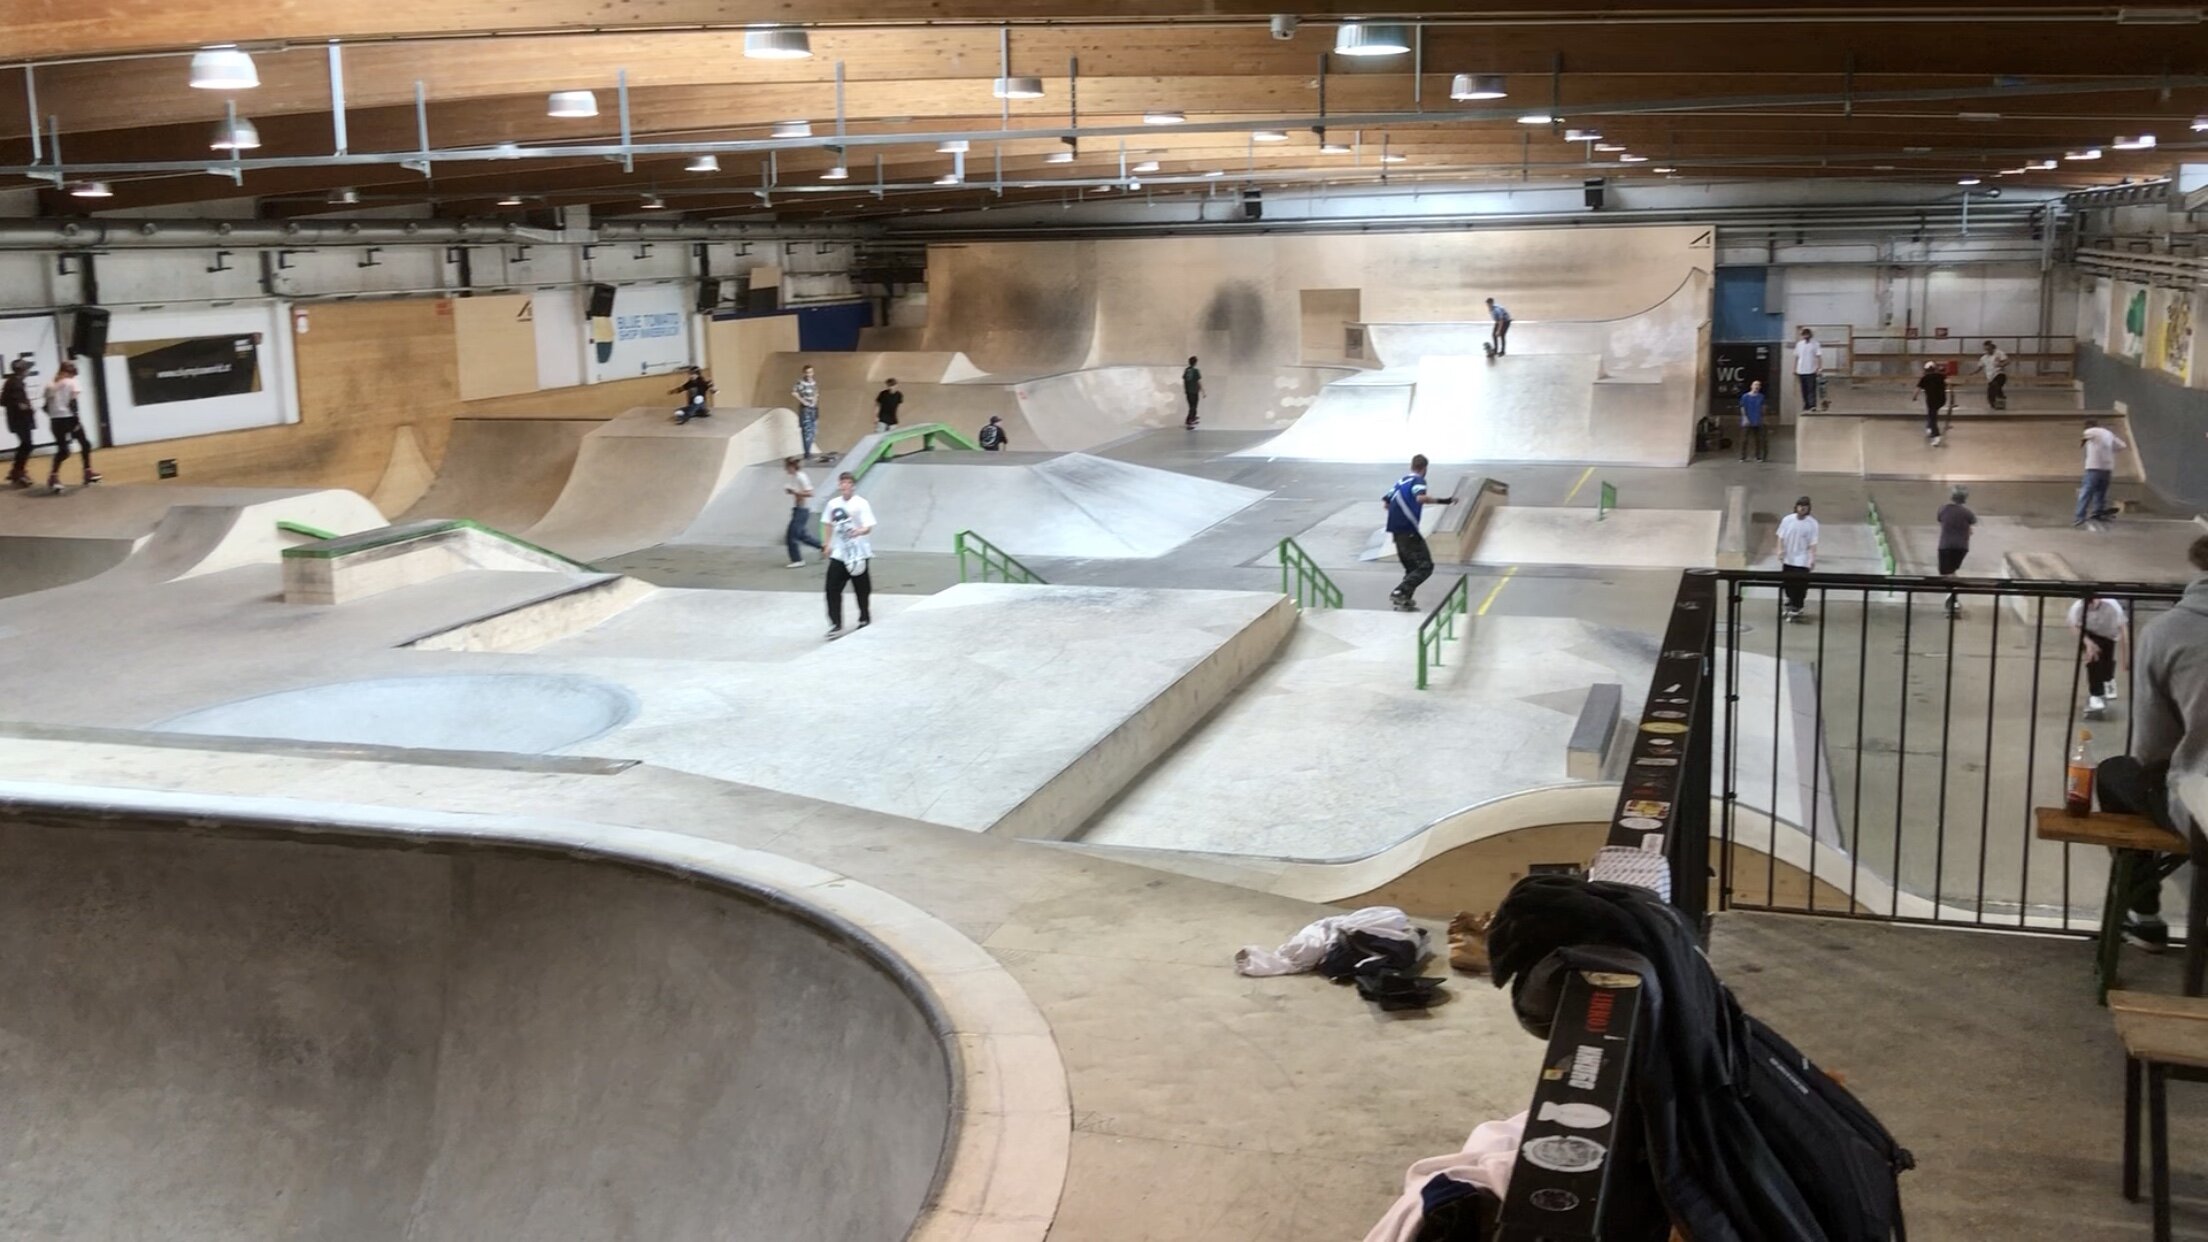 Skatehalle Innsbruck Skateboardkurs Österreich für Anfänger und Fortgeschrittene.jpg